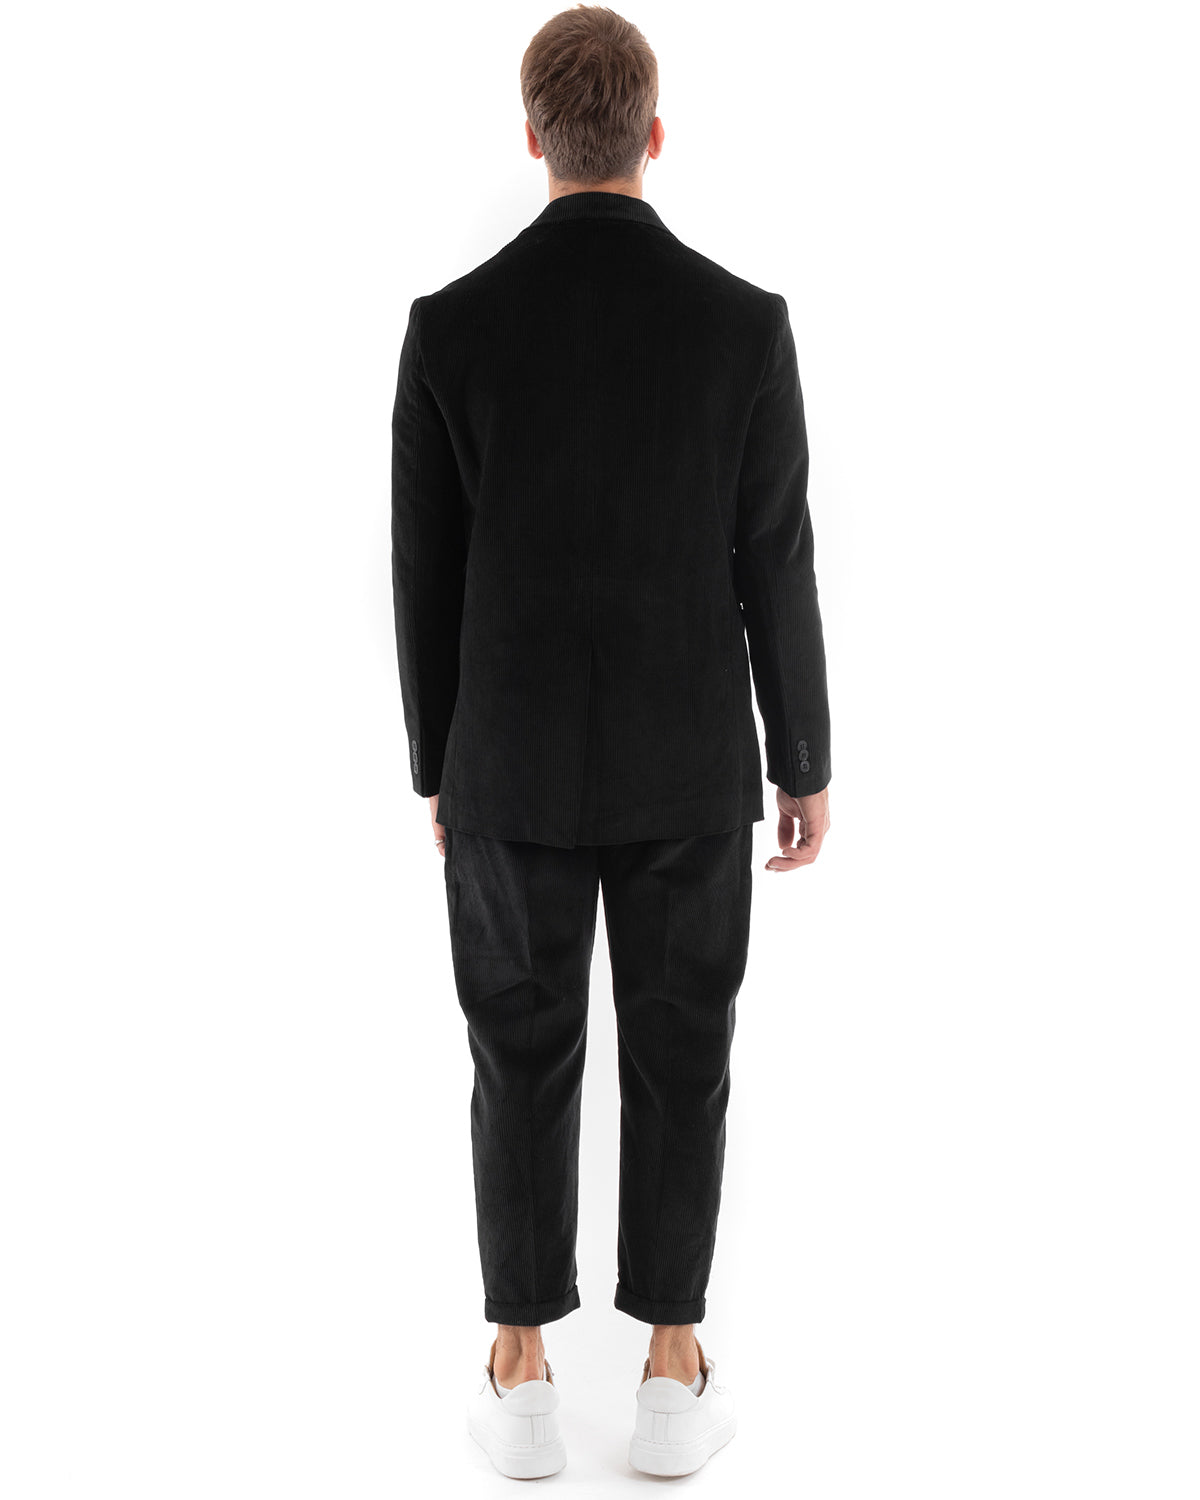 Double-Breasted Men's Suit Velvet Suit Jacket Pants Black Elegant Ceremony GIOSAL-OU2192A